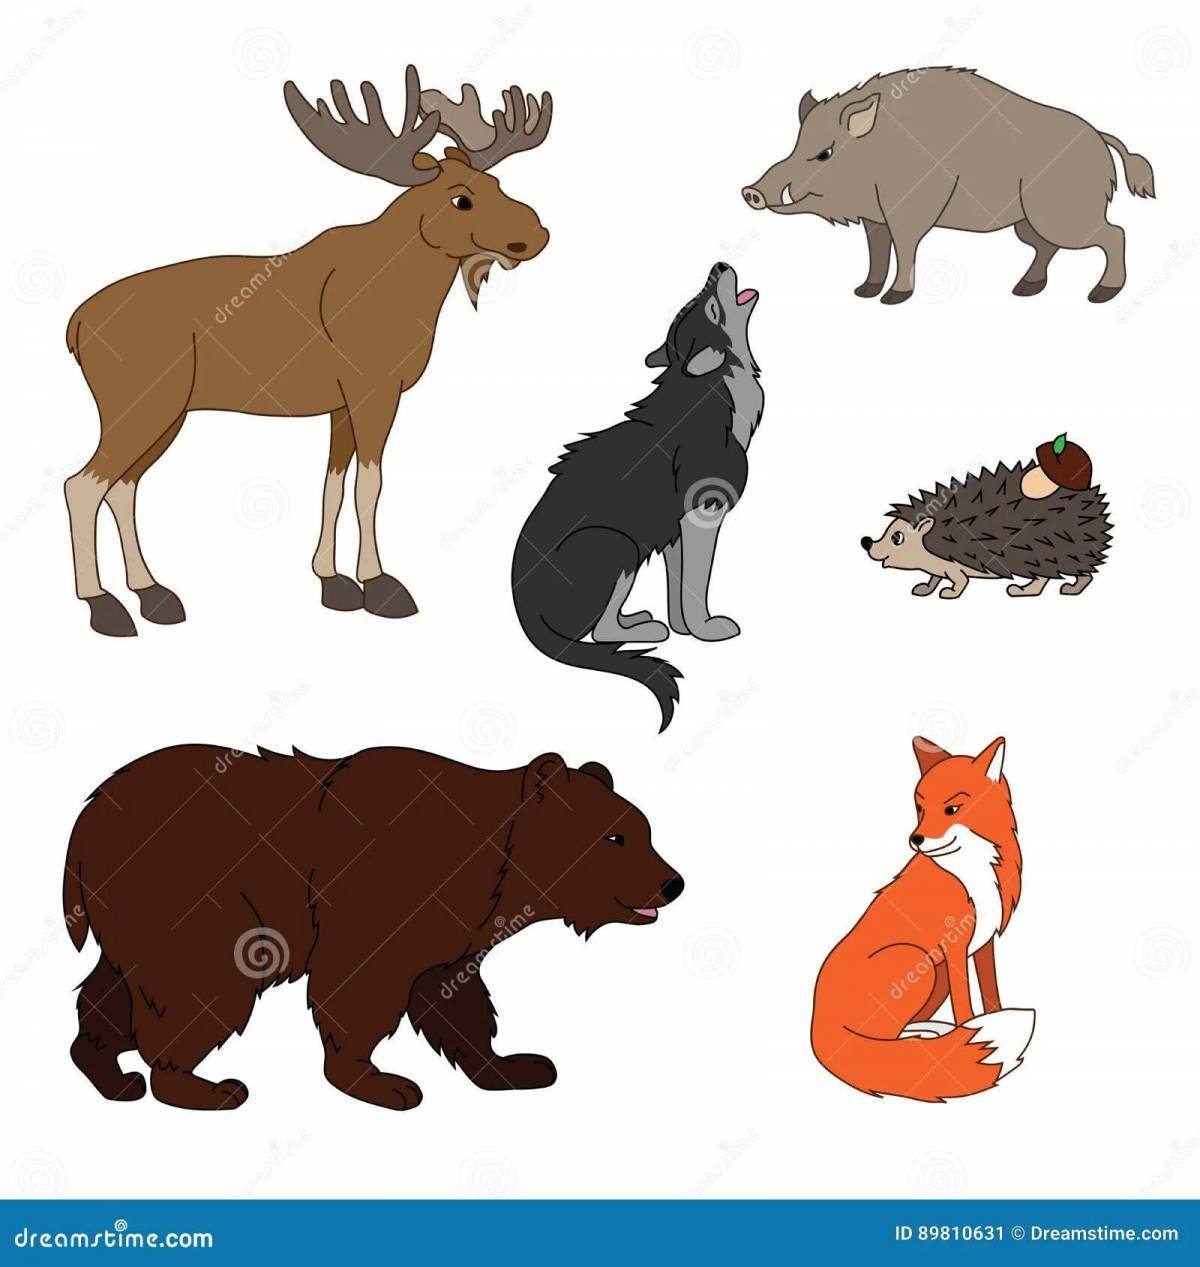 картинки про лесных животных для детей